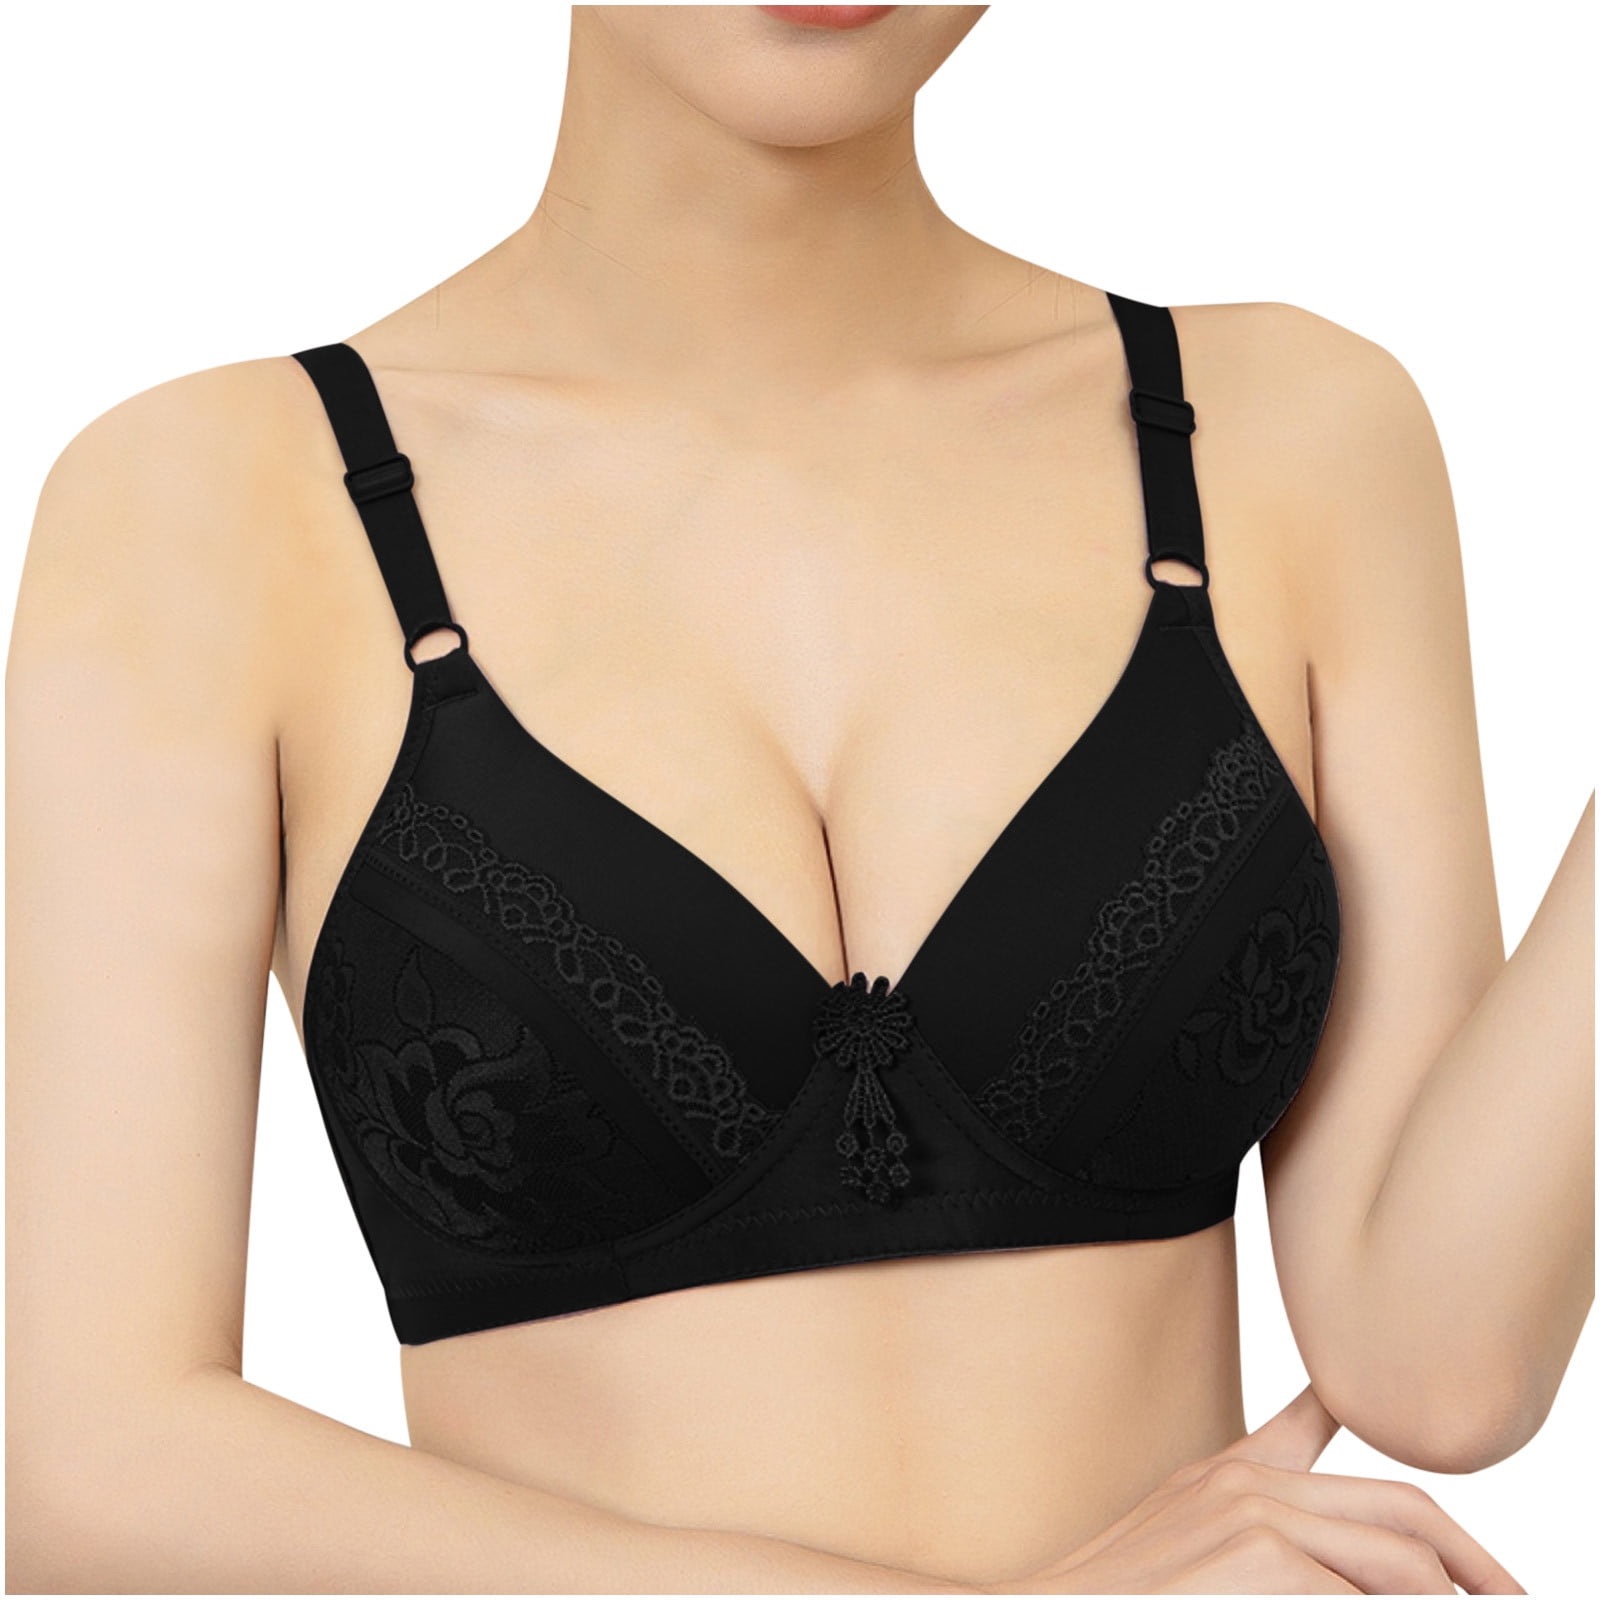 Comfortable soft Cotton Front-Close Bralette Size 34-44 B C D Cup Big brust  Large bra Middle